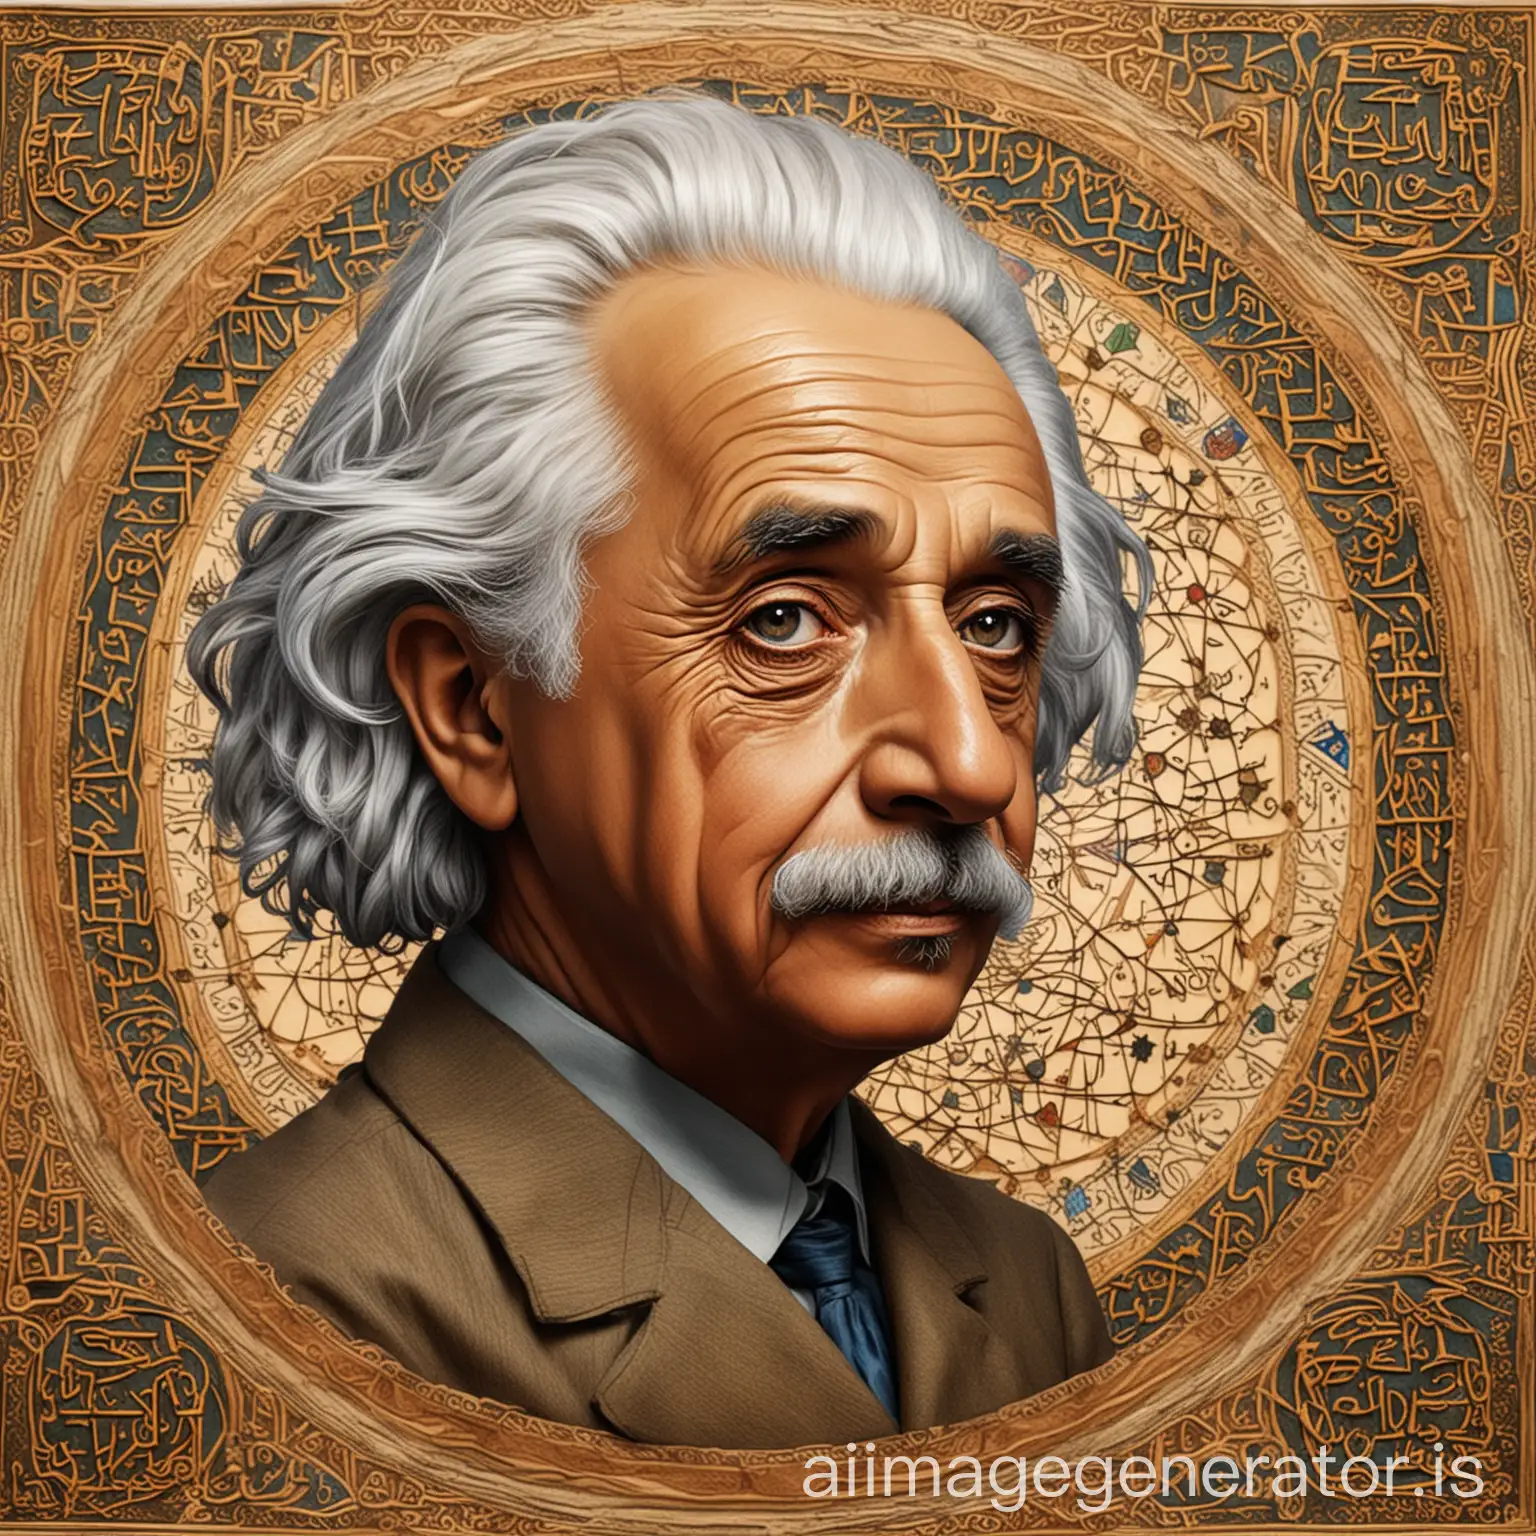 Albert Einstein in Islamic art